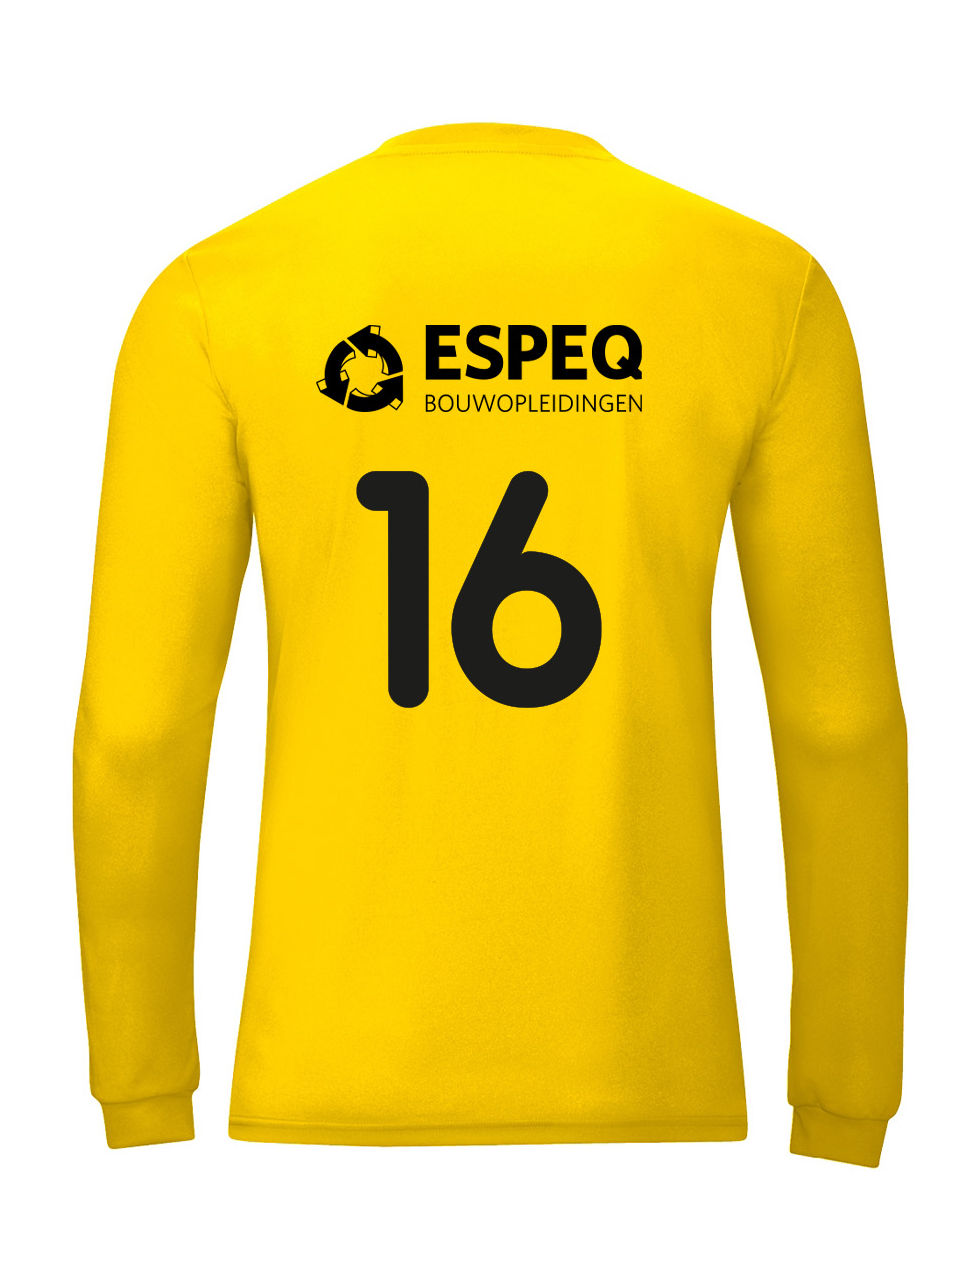 ESPEQ shirt voorbeeld